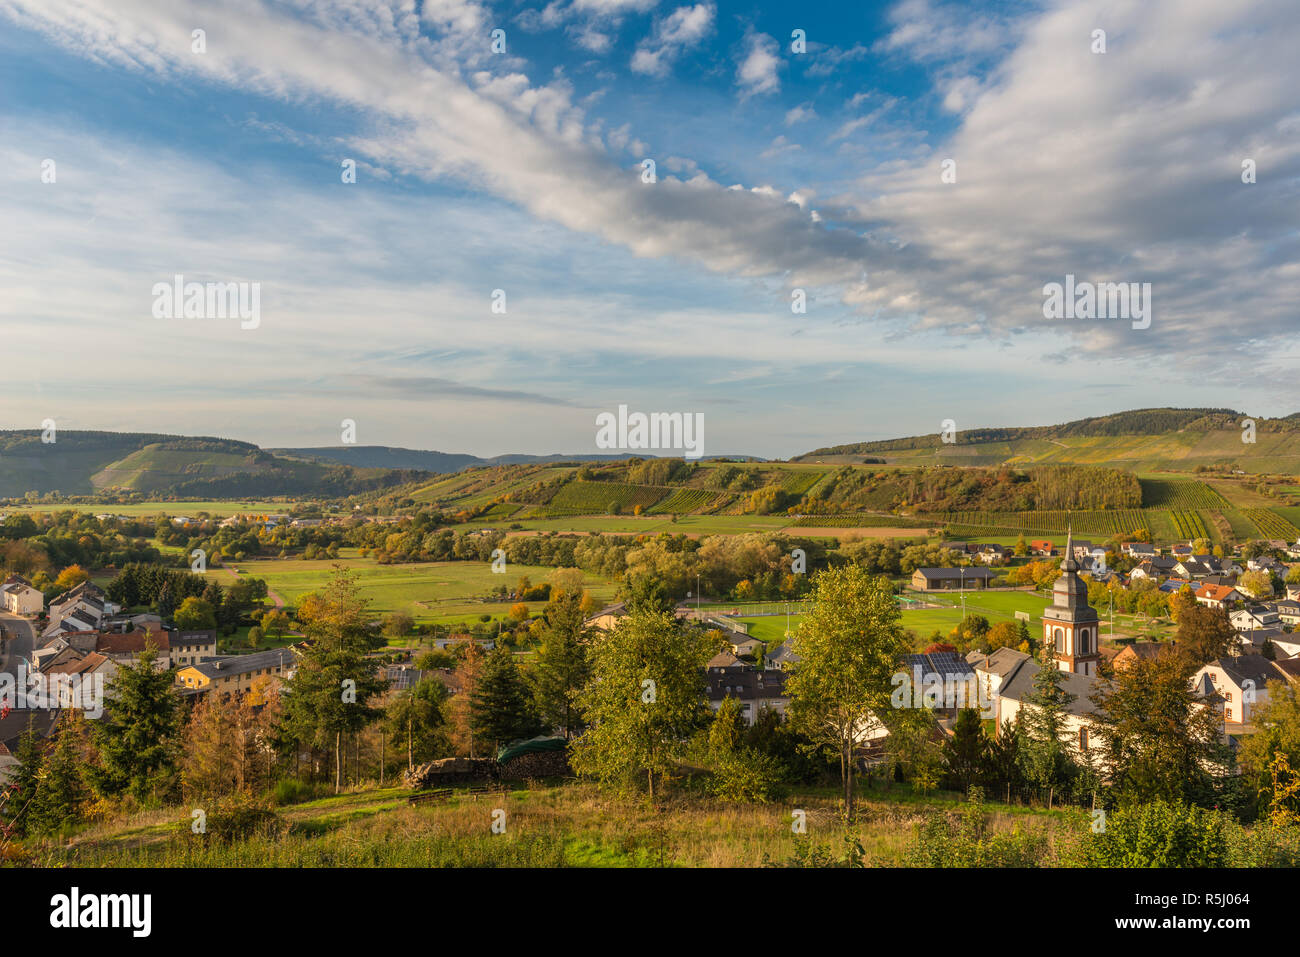 La aldea de Irsch, Saarburg, en medio de los viñedos y el paisaje montañoso de Rhineland-Palantine, Alemania, Europa Foto de stock